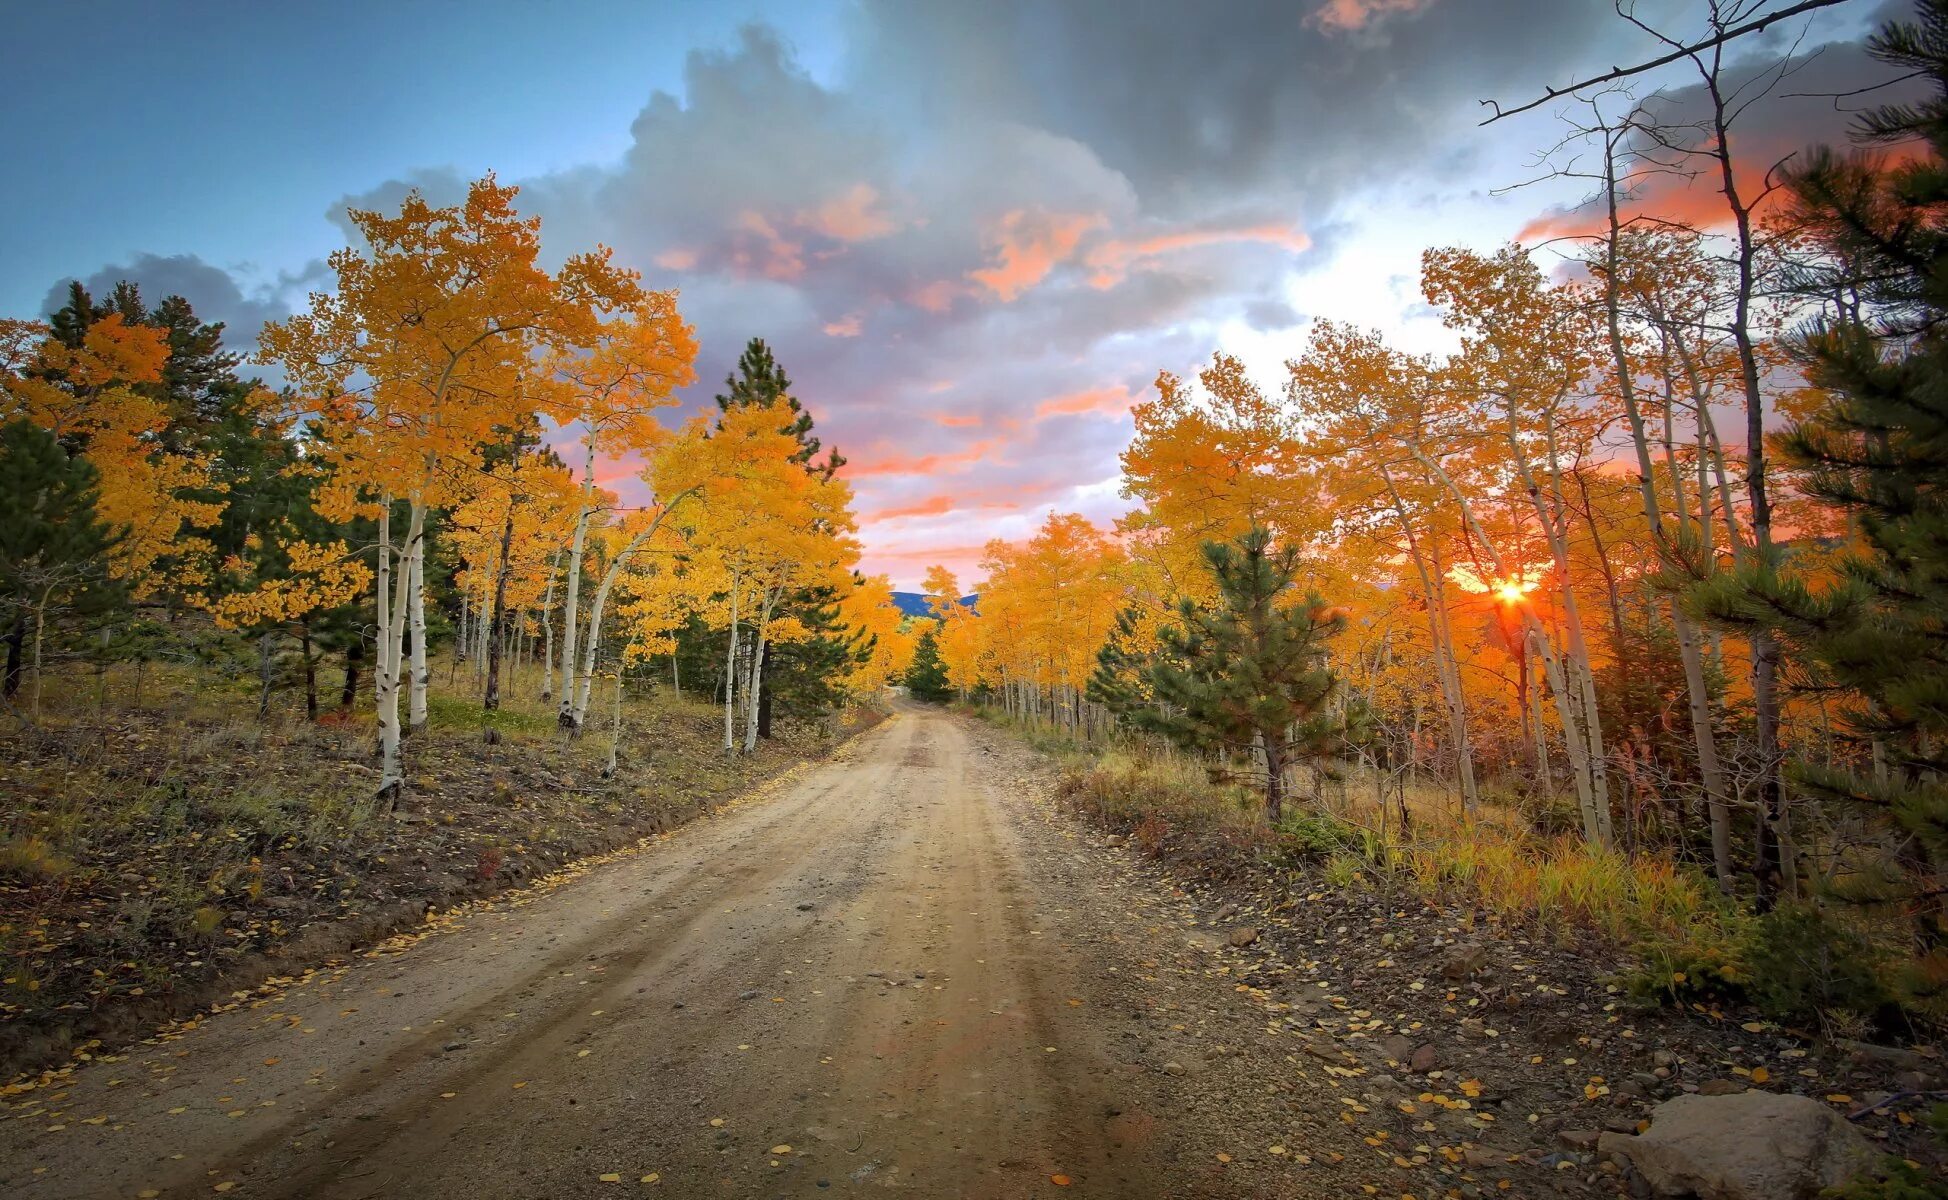 Круг по осенней дороге домой. Осенняя дорога. Дорога в осень. Осенняя дорога в лесу. Осенний пейзаж с дорогой.